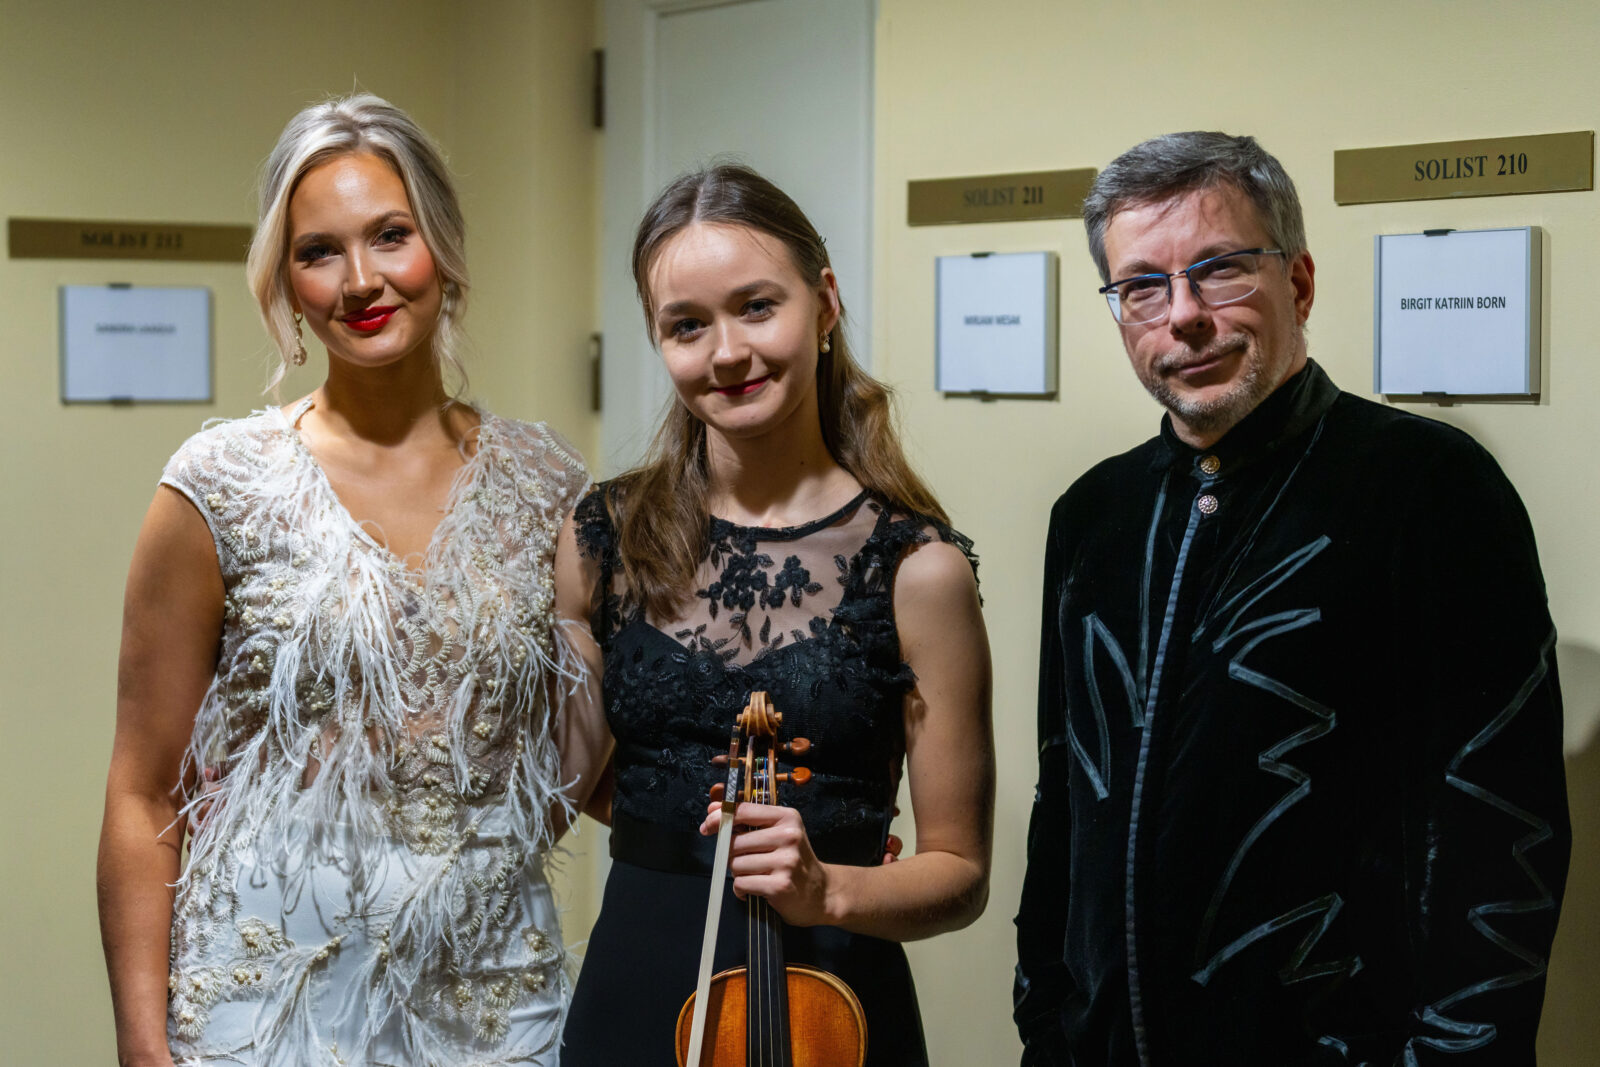 Esimesed Olari Eltsi nimelised stipendiumid pälvisid ooperilaulja Sandra Laagus ja viiuldaja Birgit Katriin Born